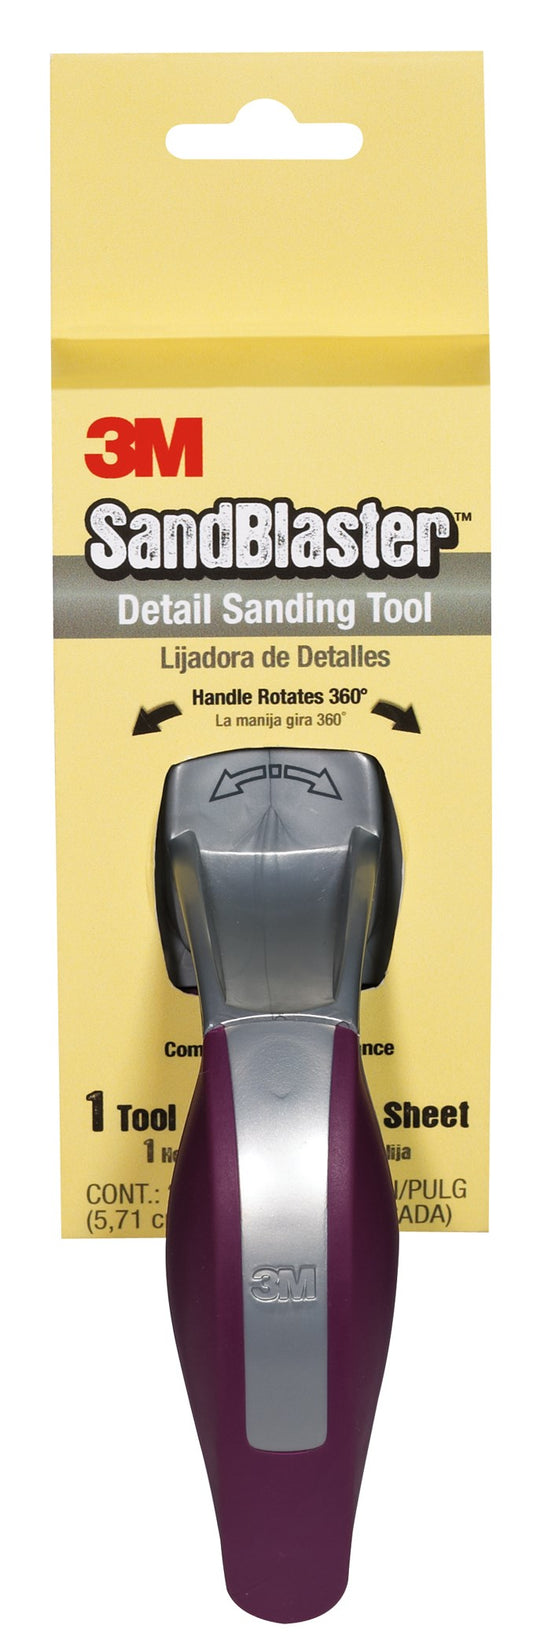 3M 461-000-4G Sandblaster™ Detail Sanding Tool